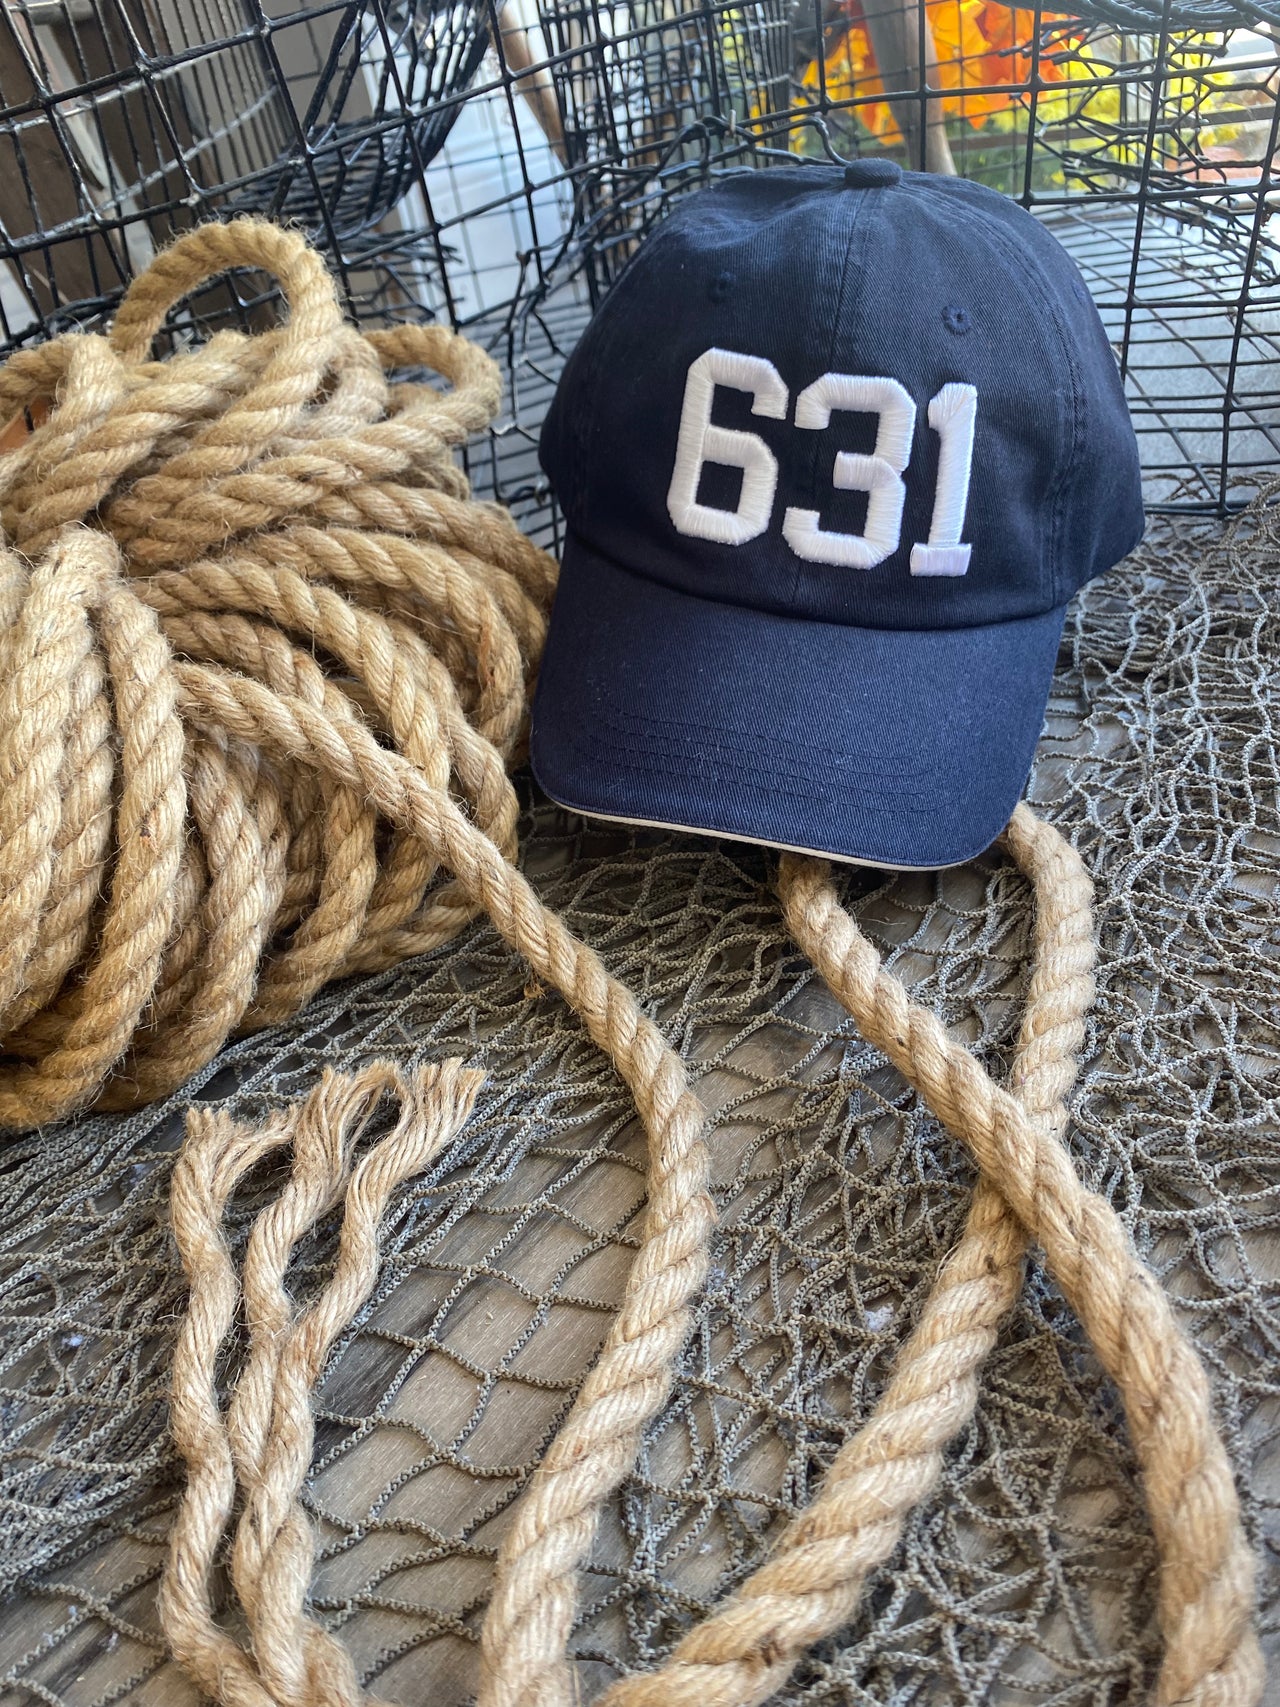 631 Hat